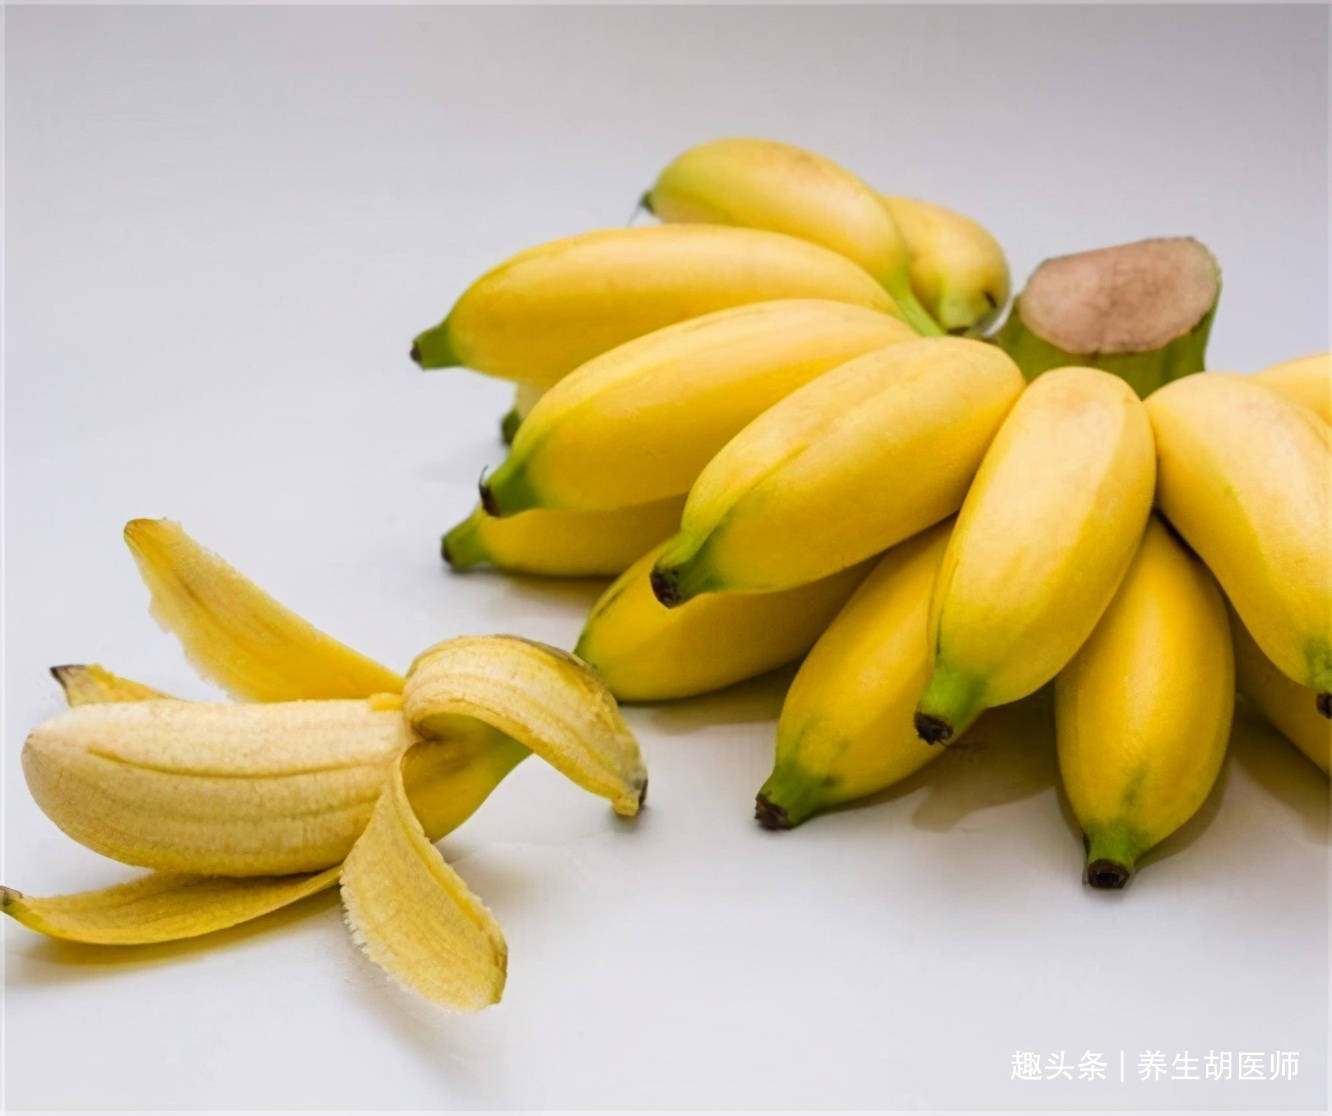 大蕉网 丑蕉是香蕉吗